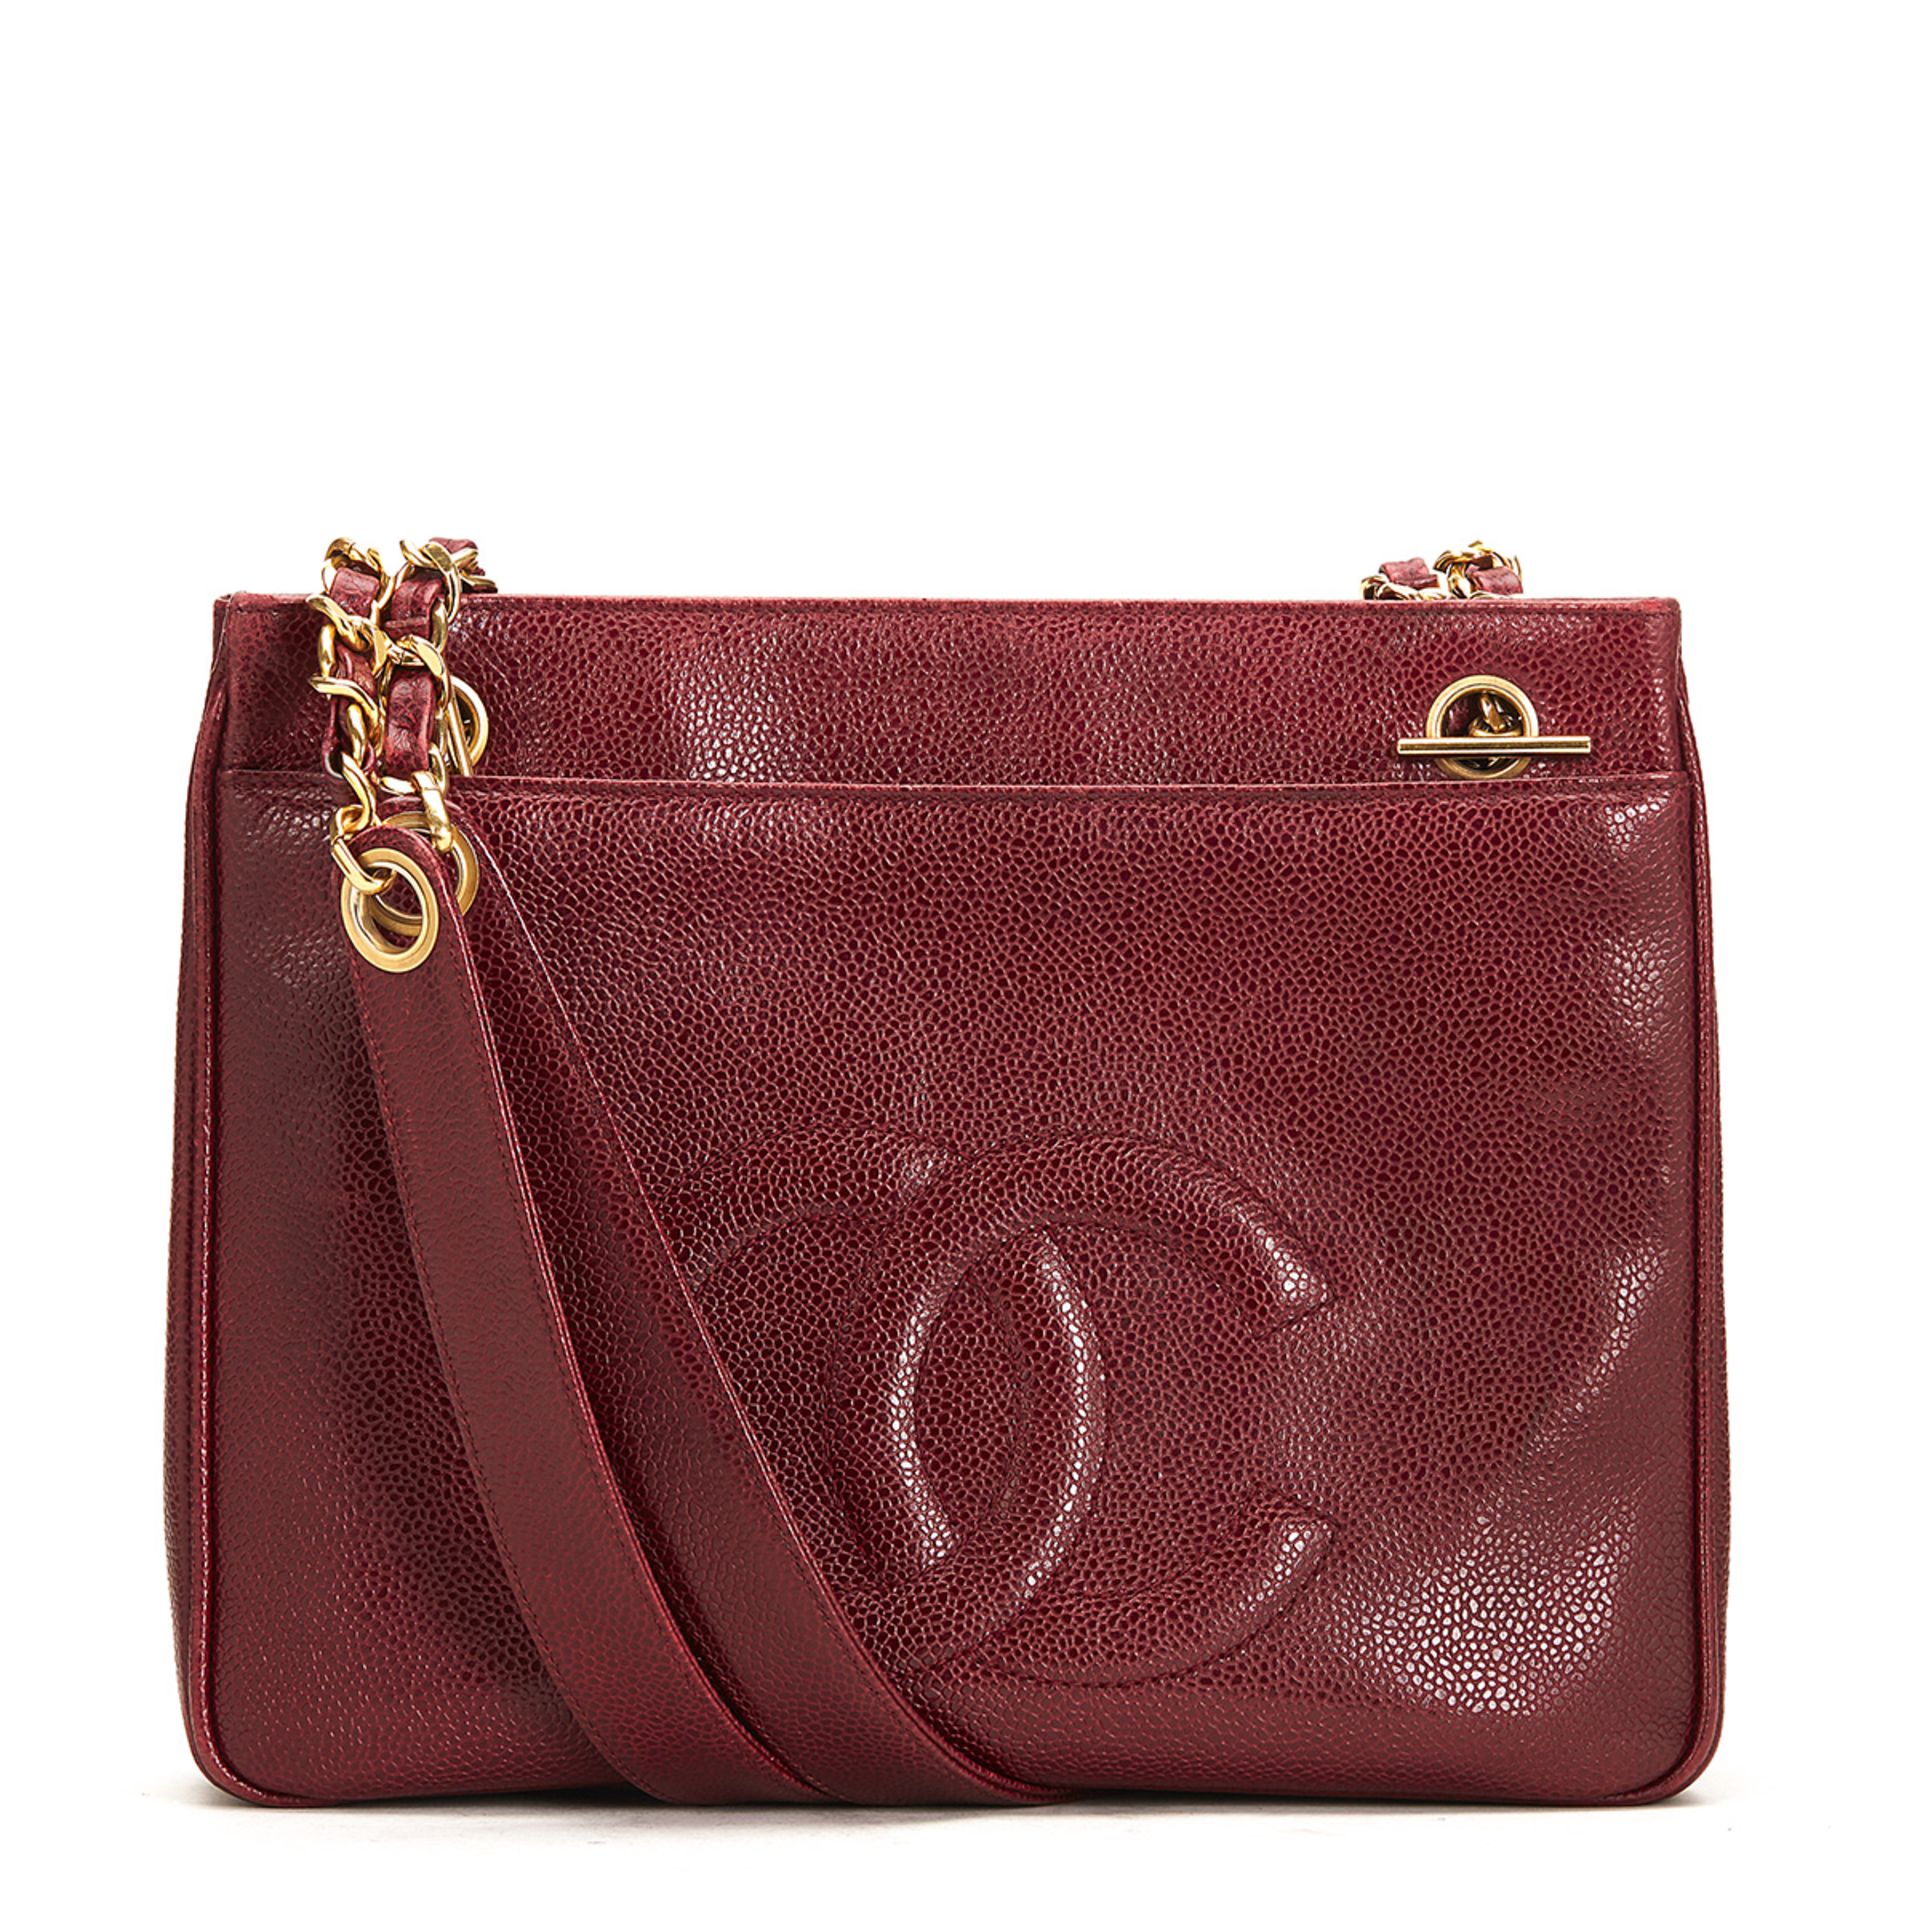 Chanel, Timeless Shoulder Bag - Image 2 of 10